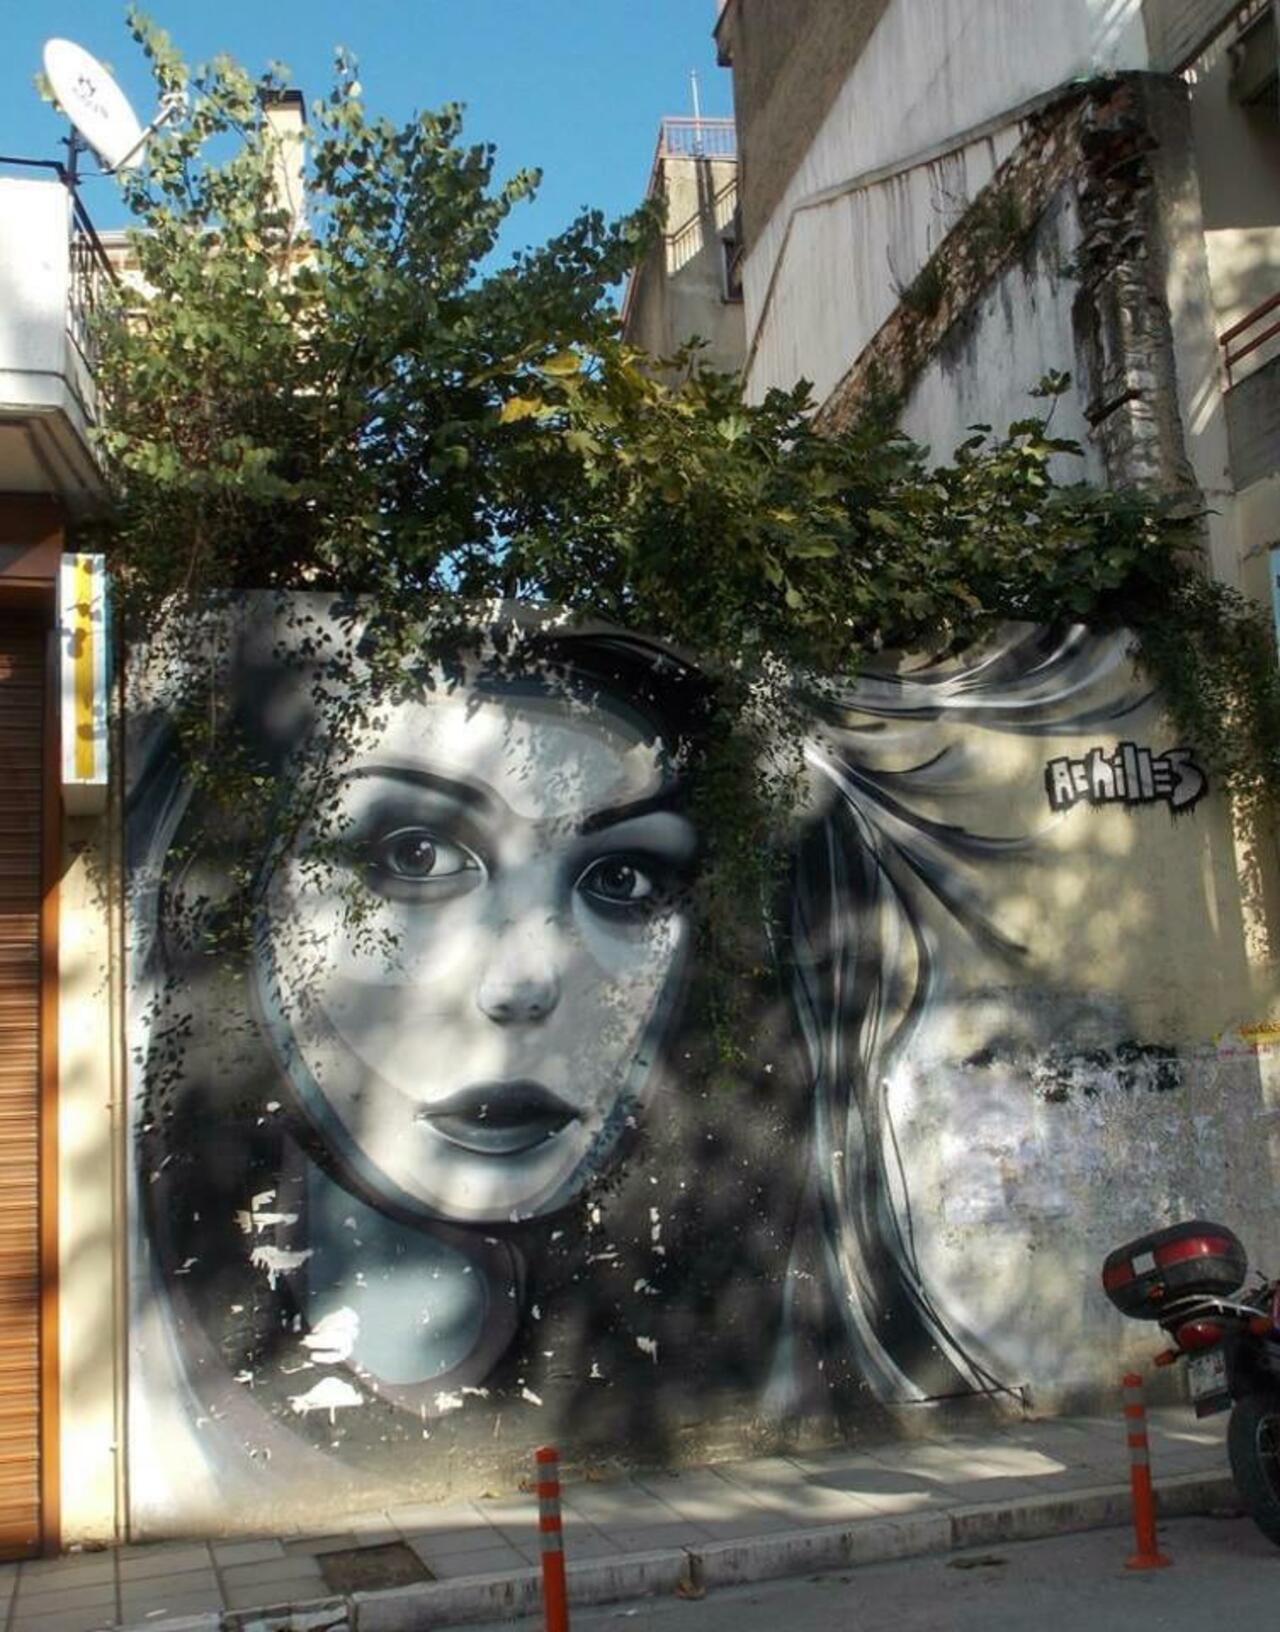 When Street Art meets nature by the artist Achilles 

#art #arte #graffiti #streetart http://t.co/2DcTOOmY7s